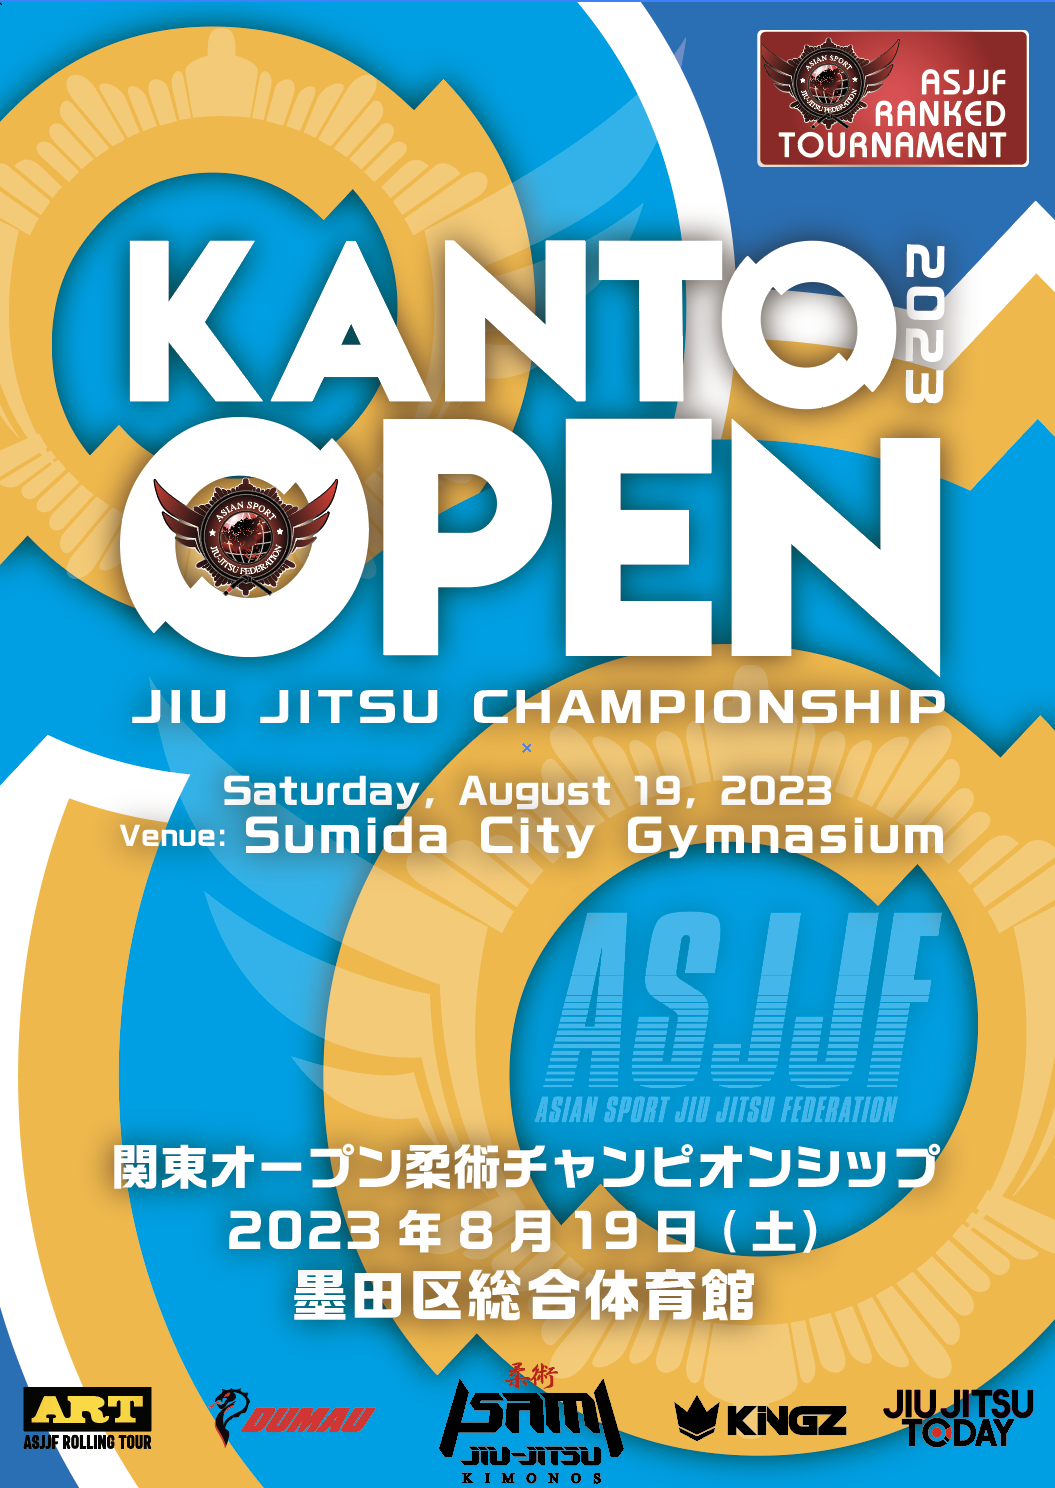 Kanto Open Jiu Jitsu Championship 2023